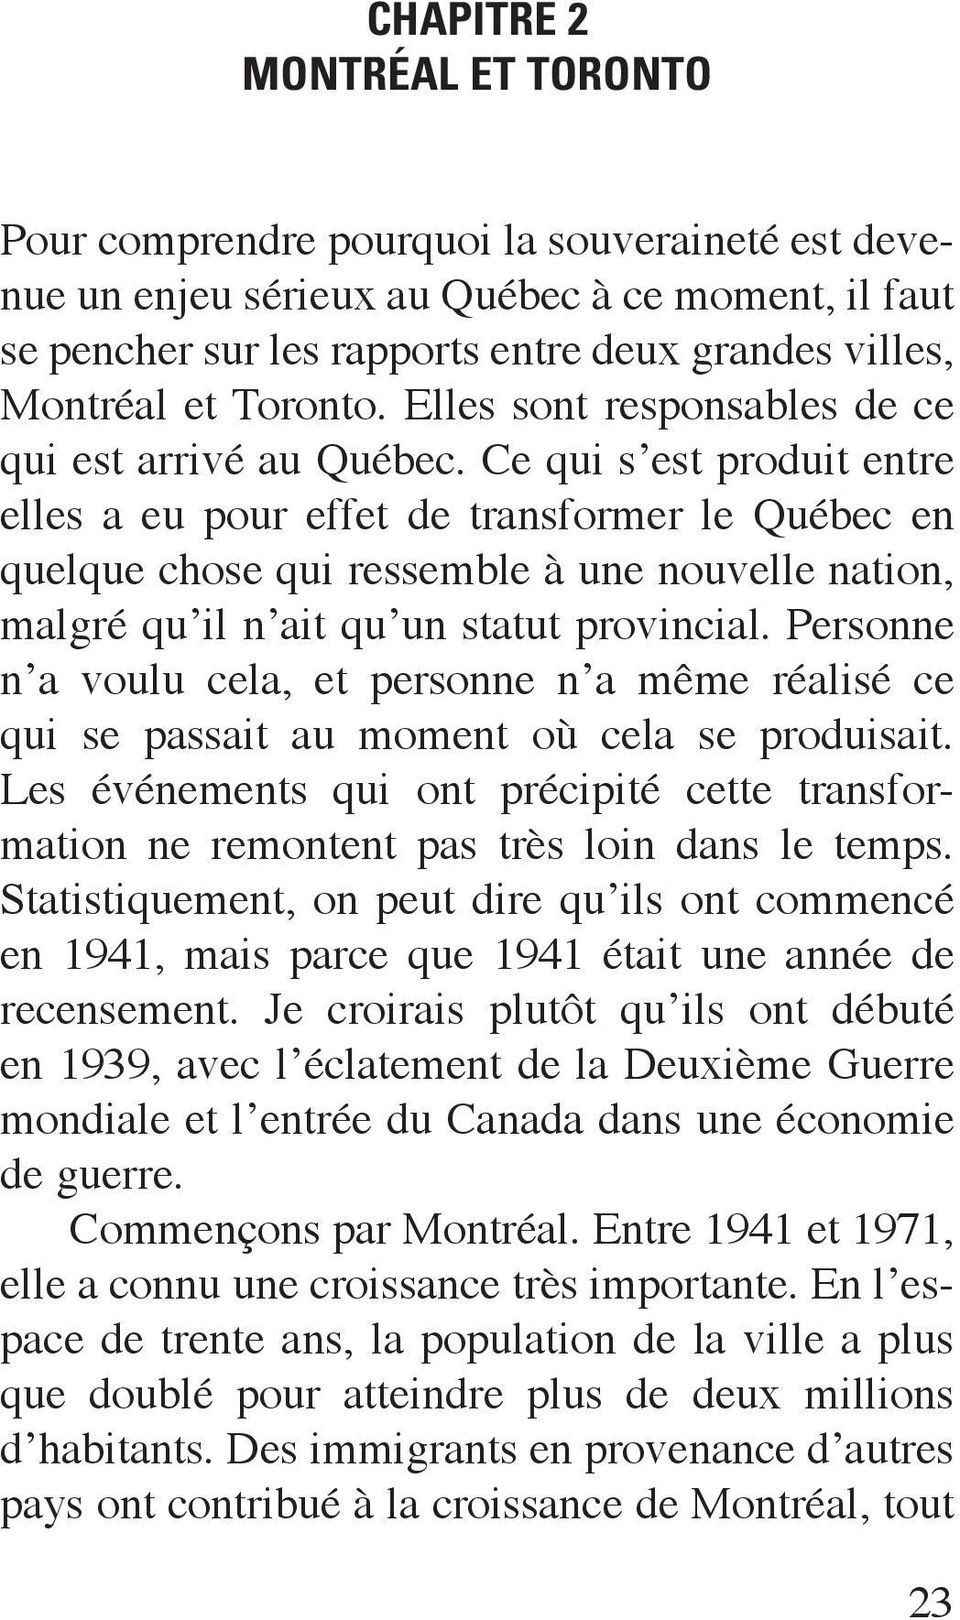 Ce qui s est produit entre elles a eu pour effet de transformer le Québec en quelque chose qui ressemble à une nouvelle nation, malgré qu il n ait qu un statut provincial.